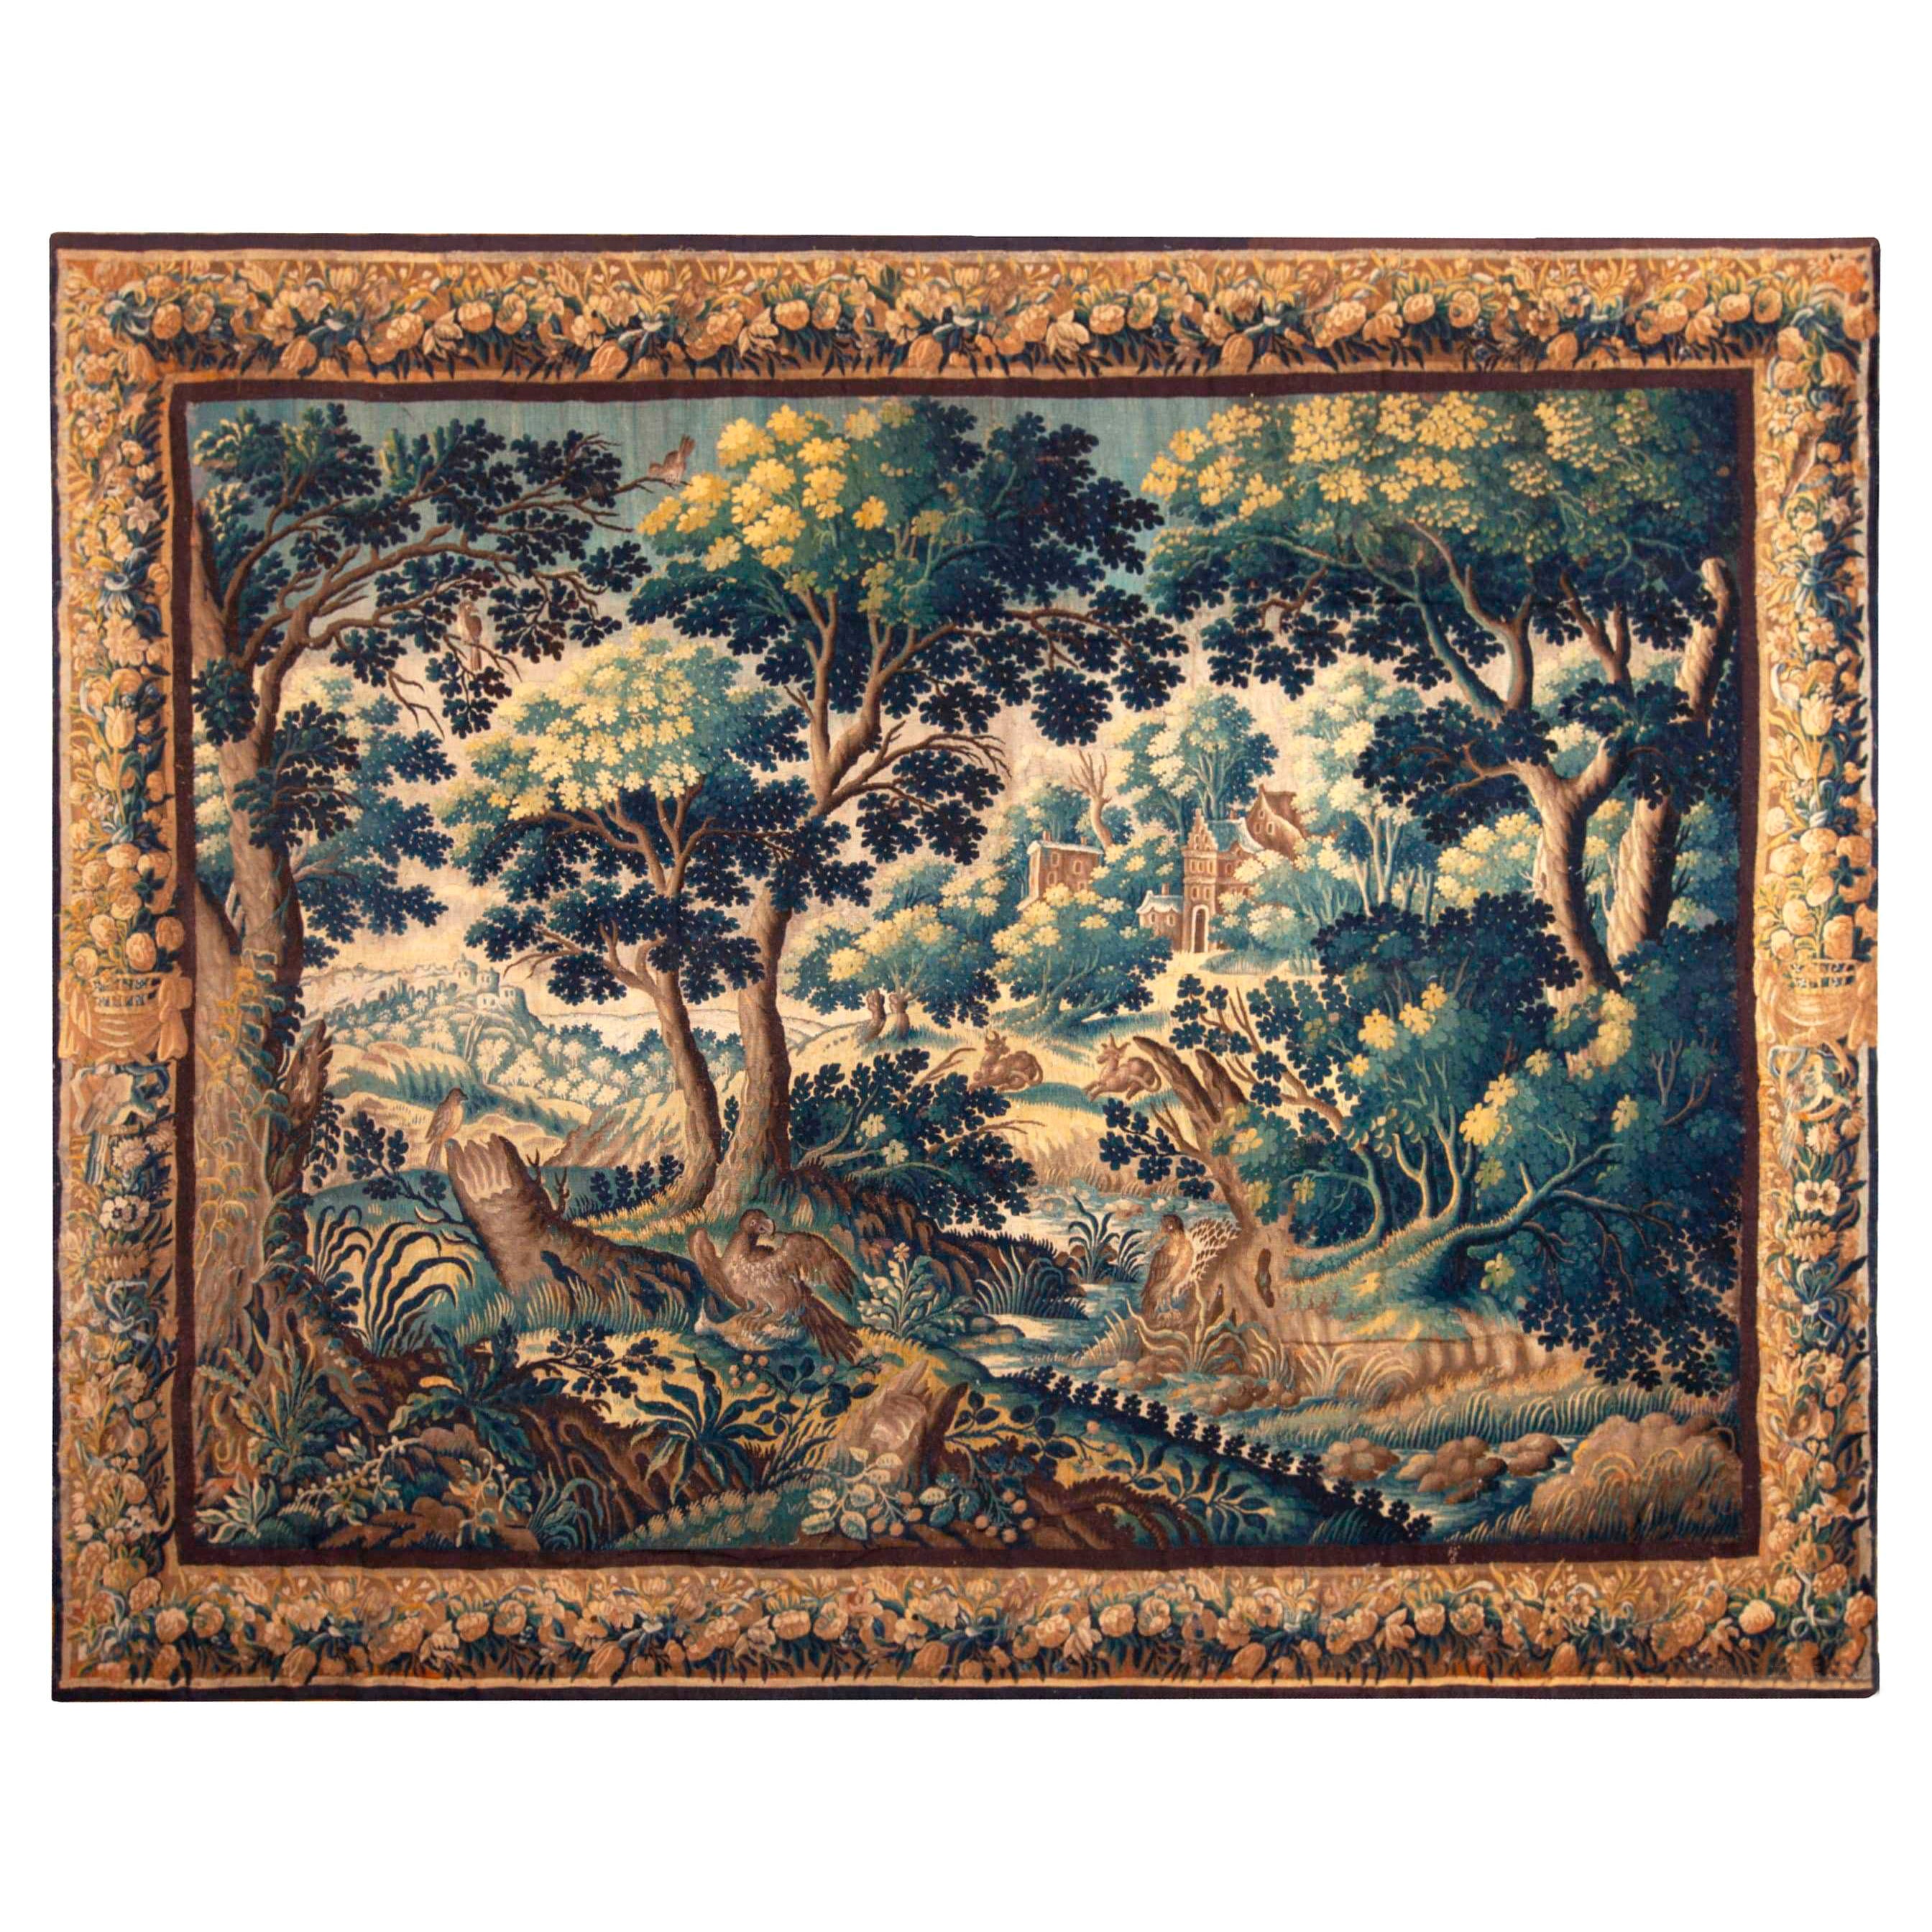 Antiker französischer Verdure-Wandteppich aus Seide des 17. Jahrhunderts mit Sammlerstücken, 10' x 12'5"